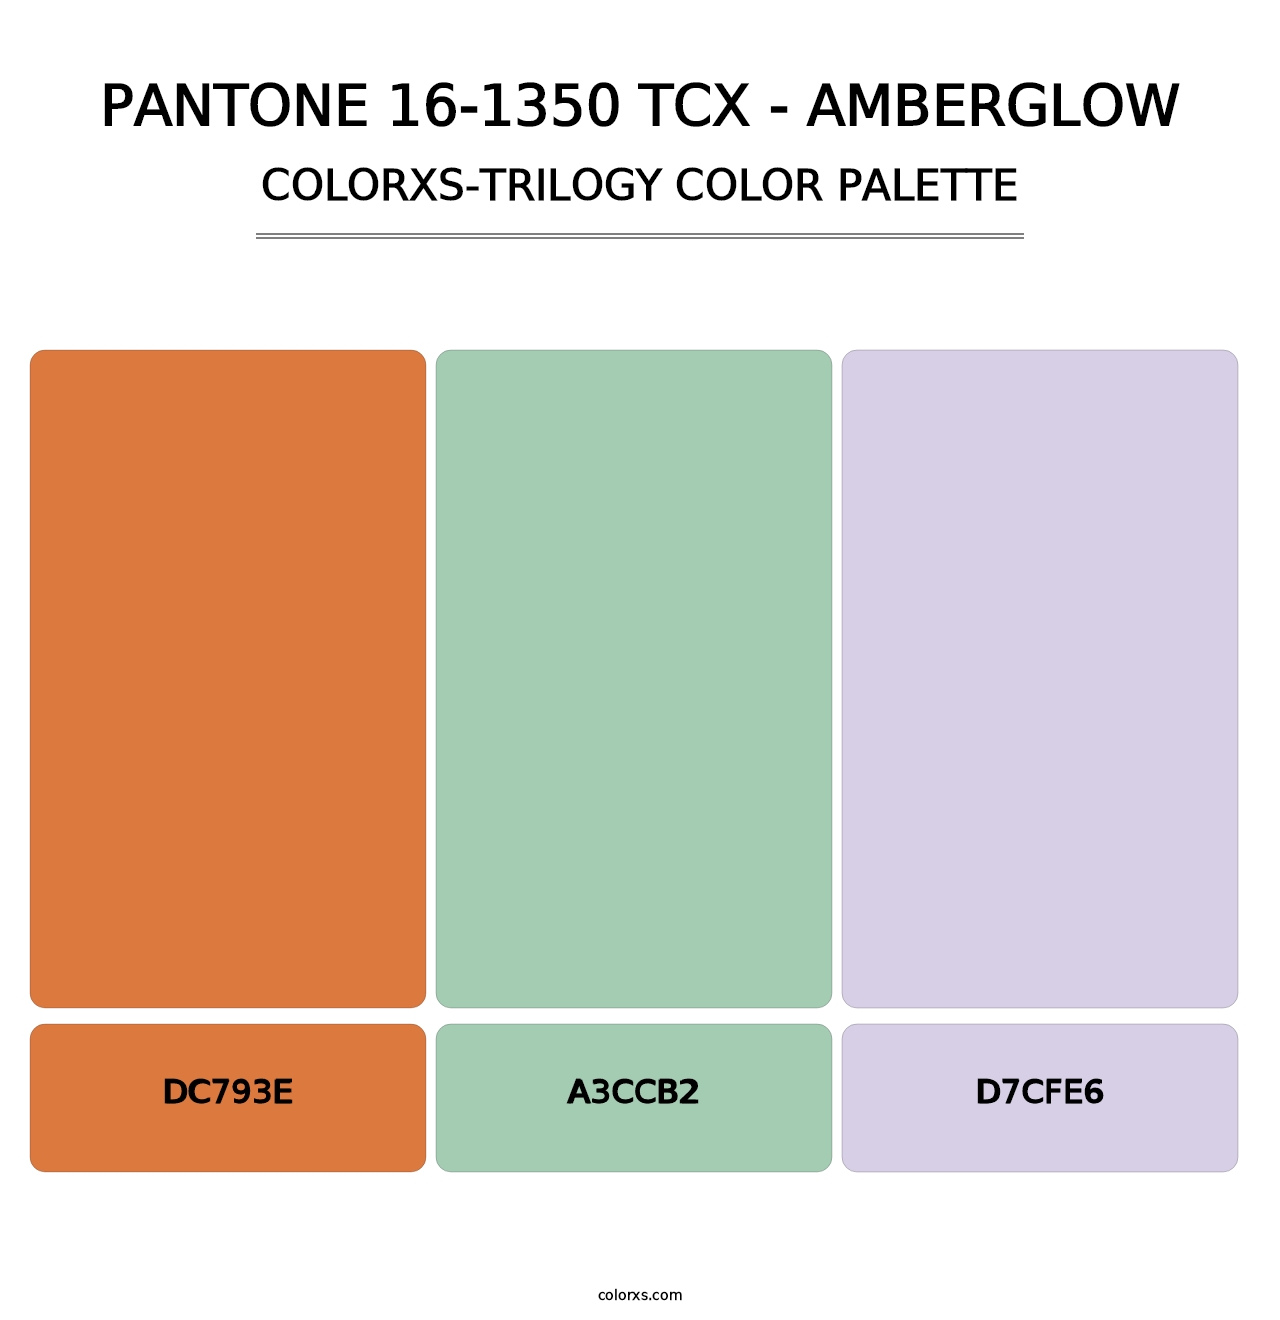 PANTONE 16-1350 TCX - Amberglow - Colorxs Trilogy Palette